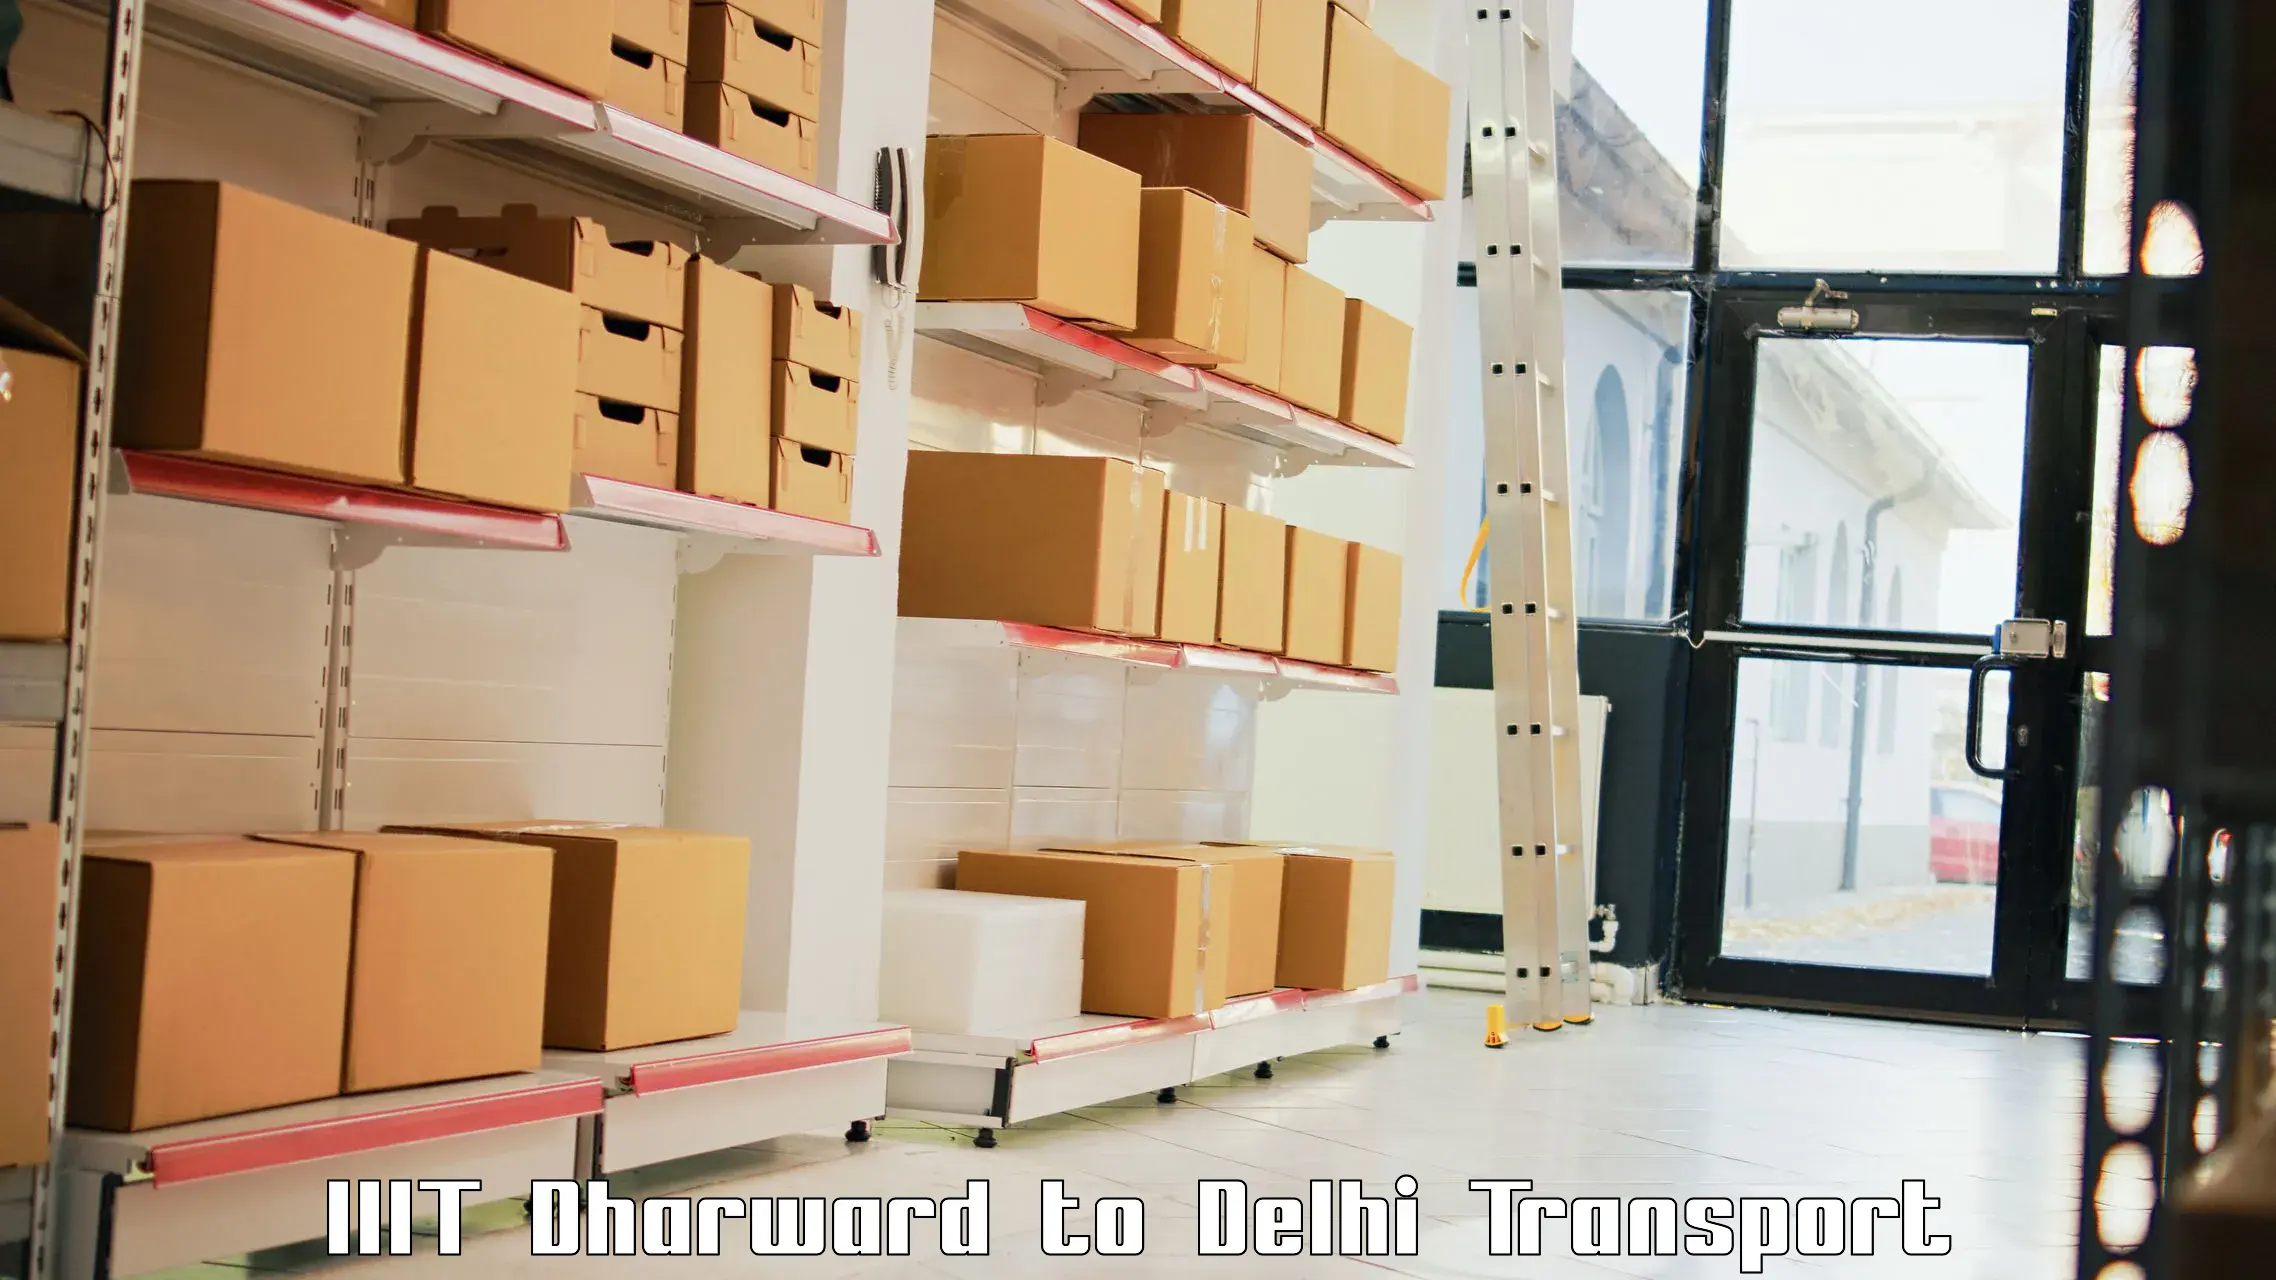 Transport services in IIIT Dharward to Krishna Nagar